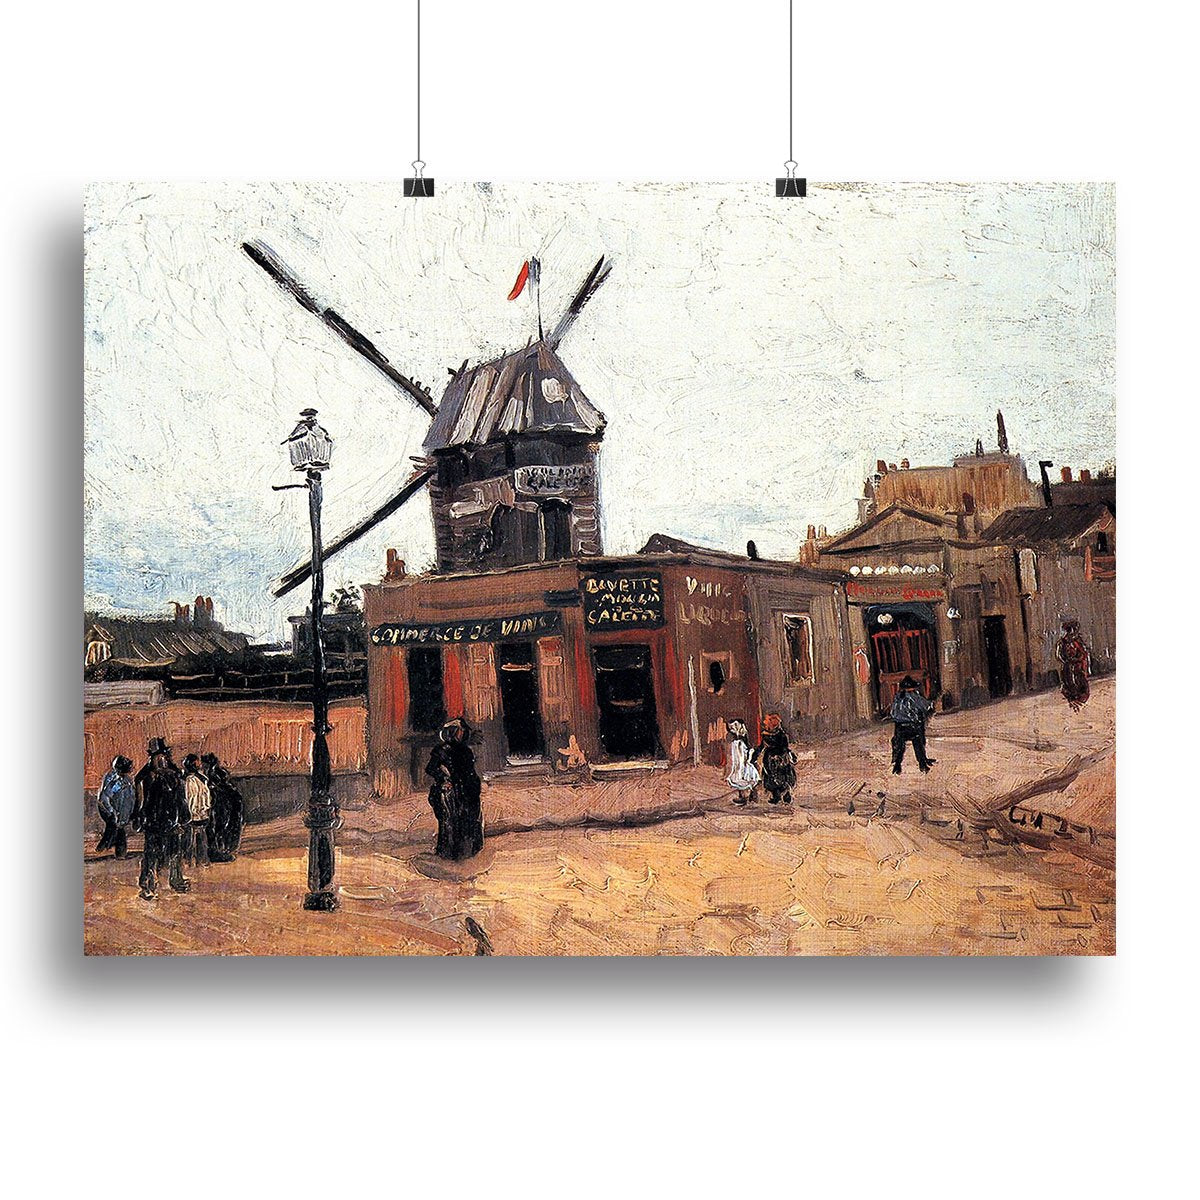 Le Moulin de la Galette 3 by Van Gogh Canvas Print or Poster